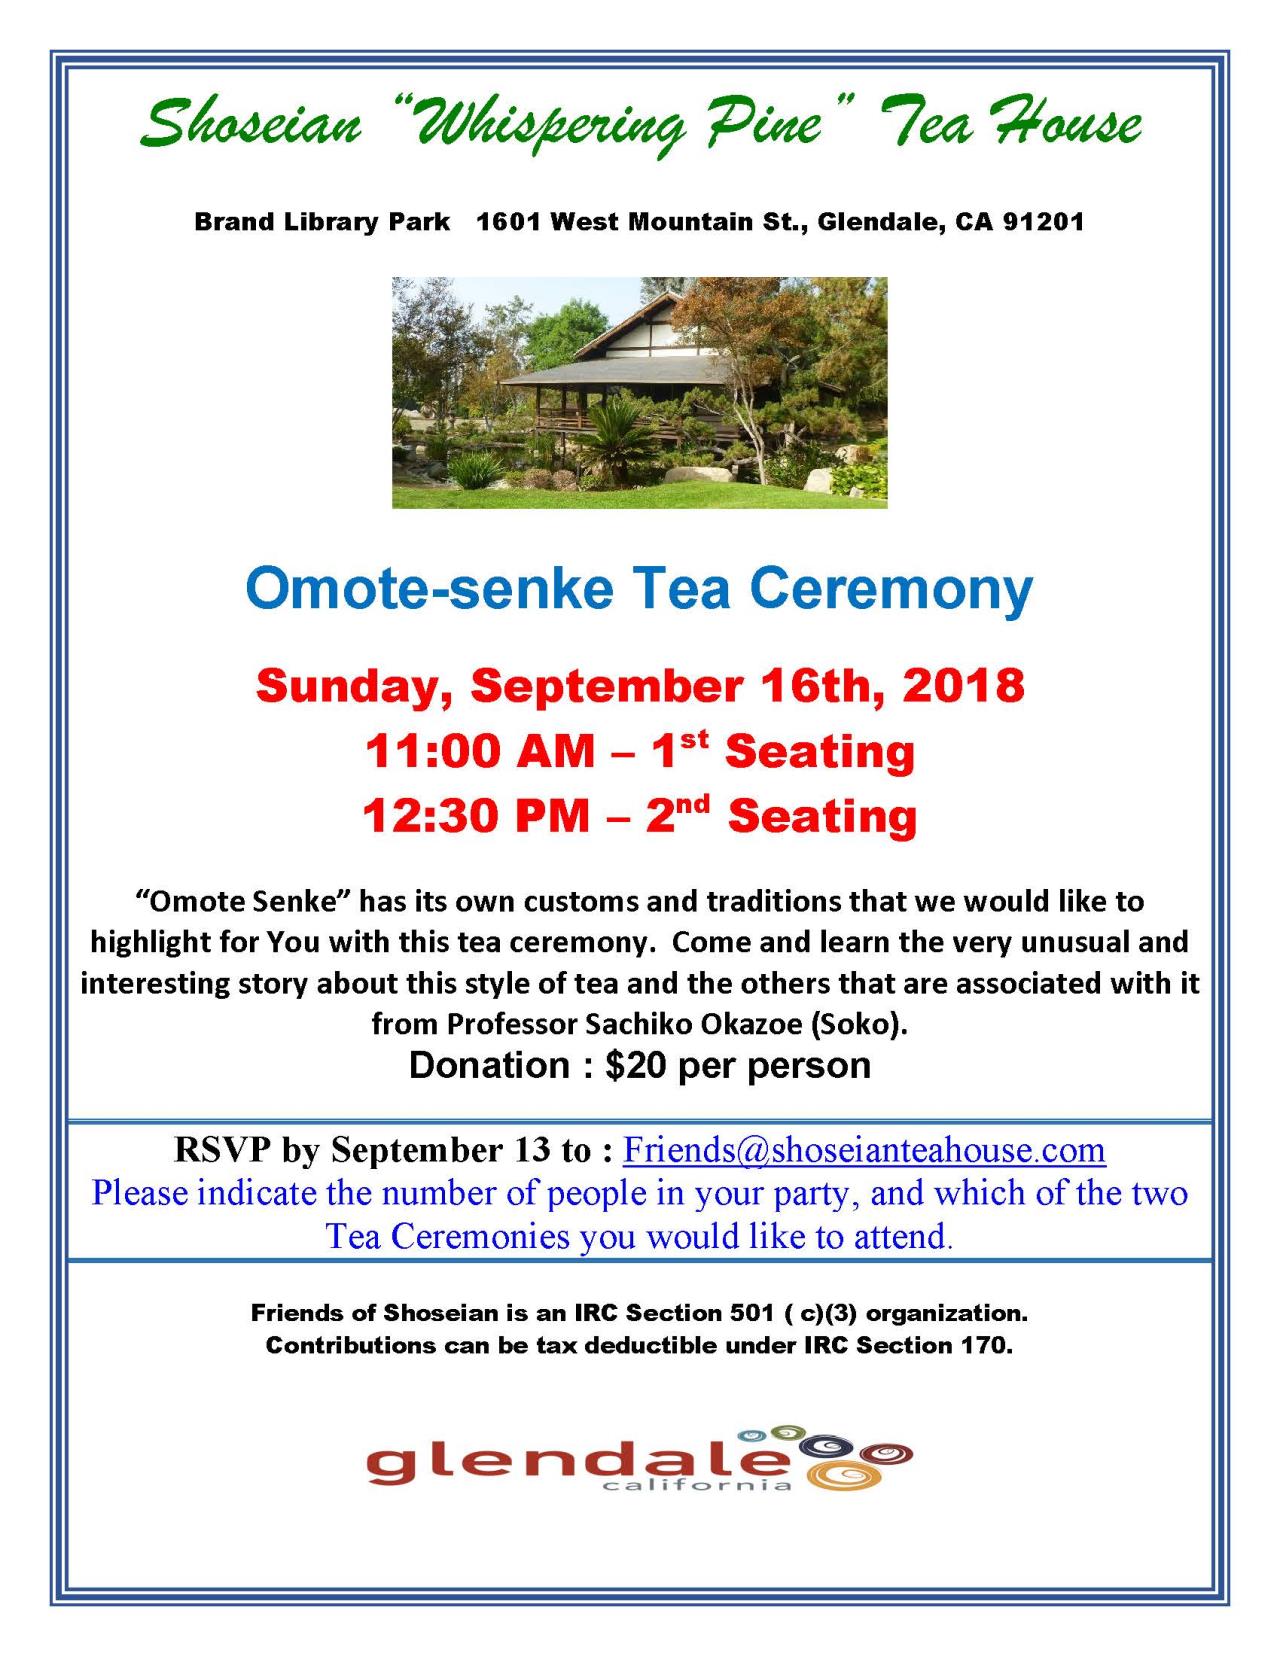 Shoseian Tea House - Omote-senke Flyer 09-16-18 V1